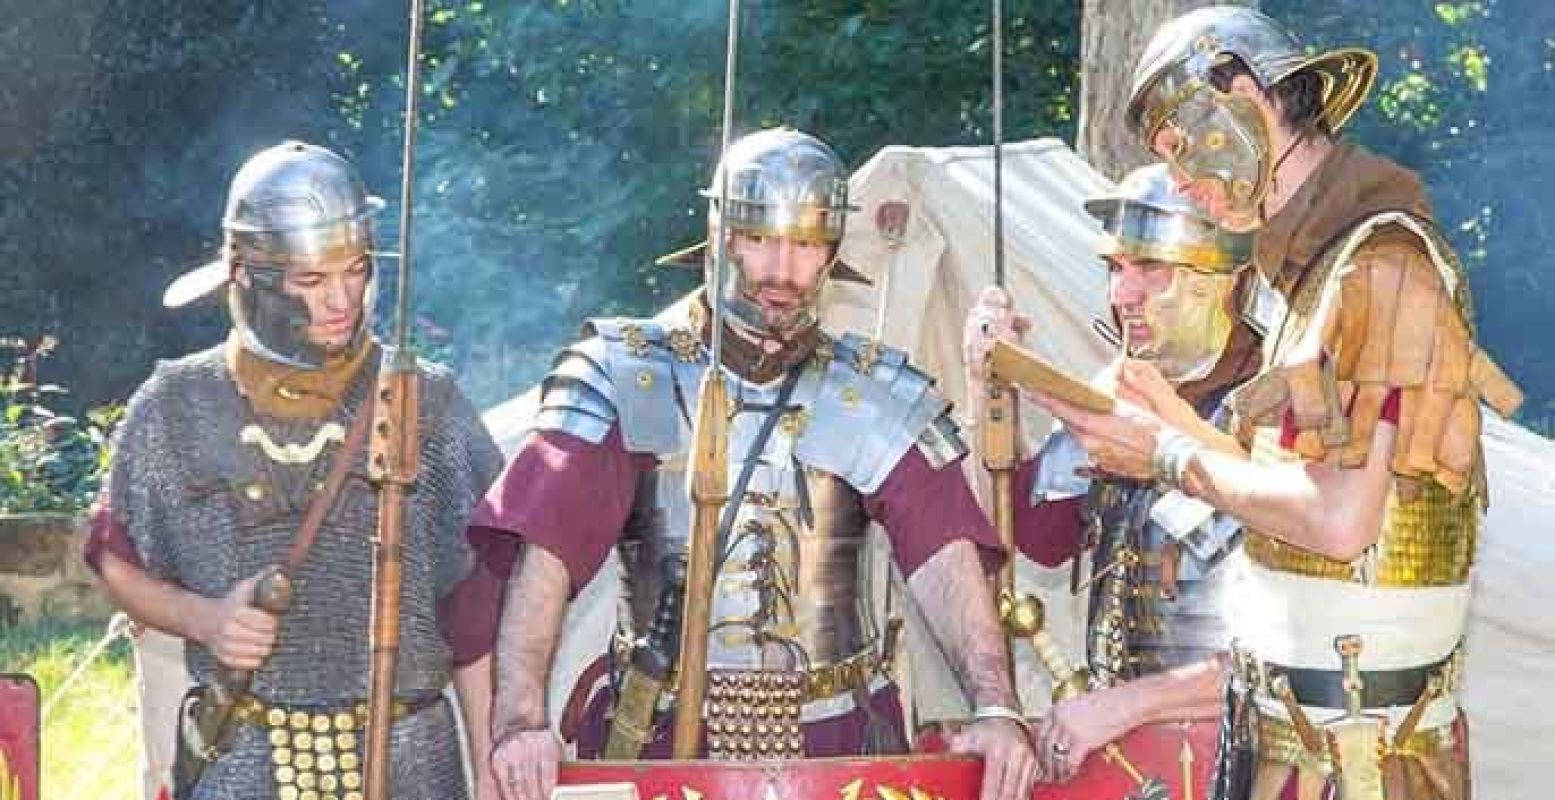 Verdedig je als een echte Romein tegen de barbaren! Foto: Orientalis